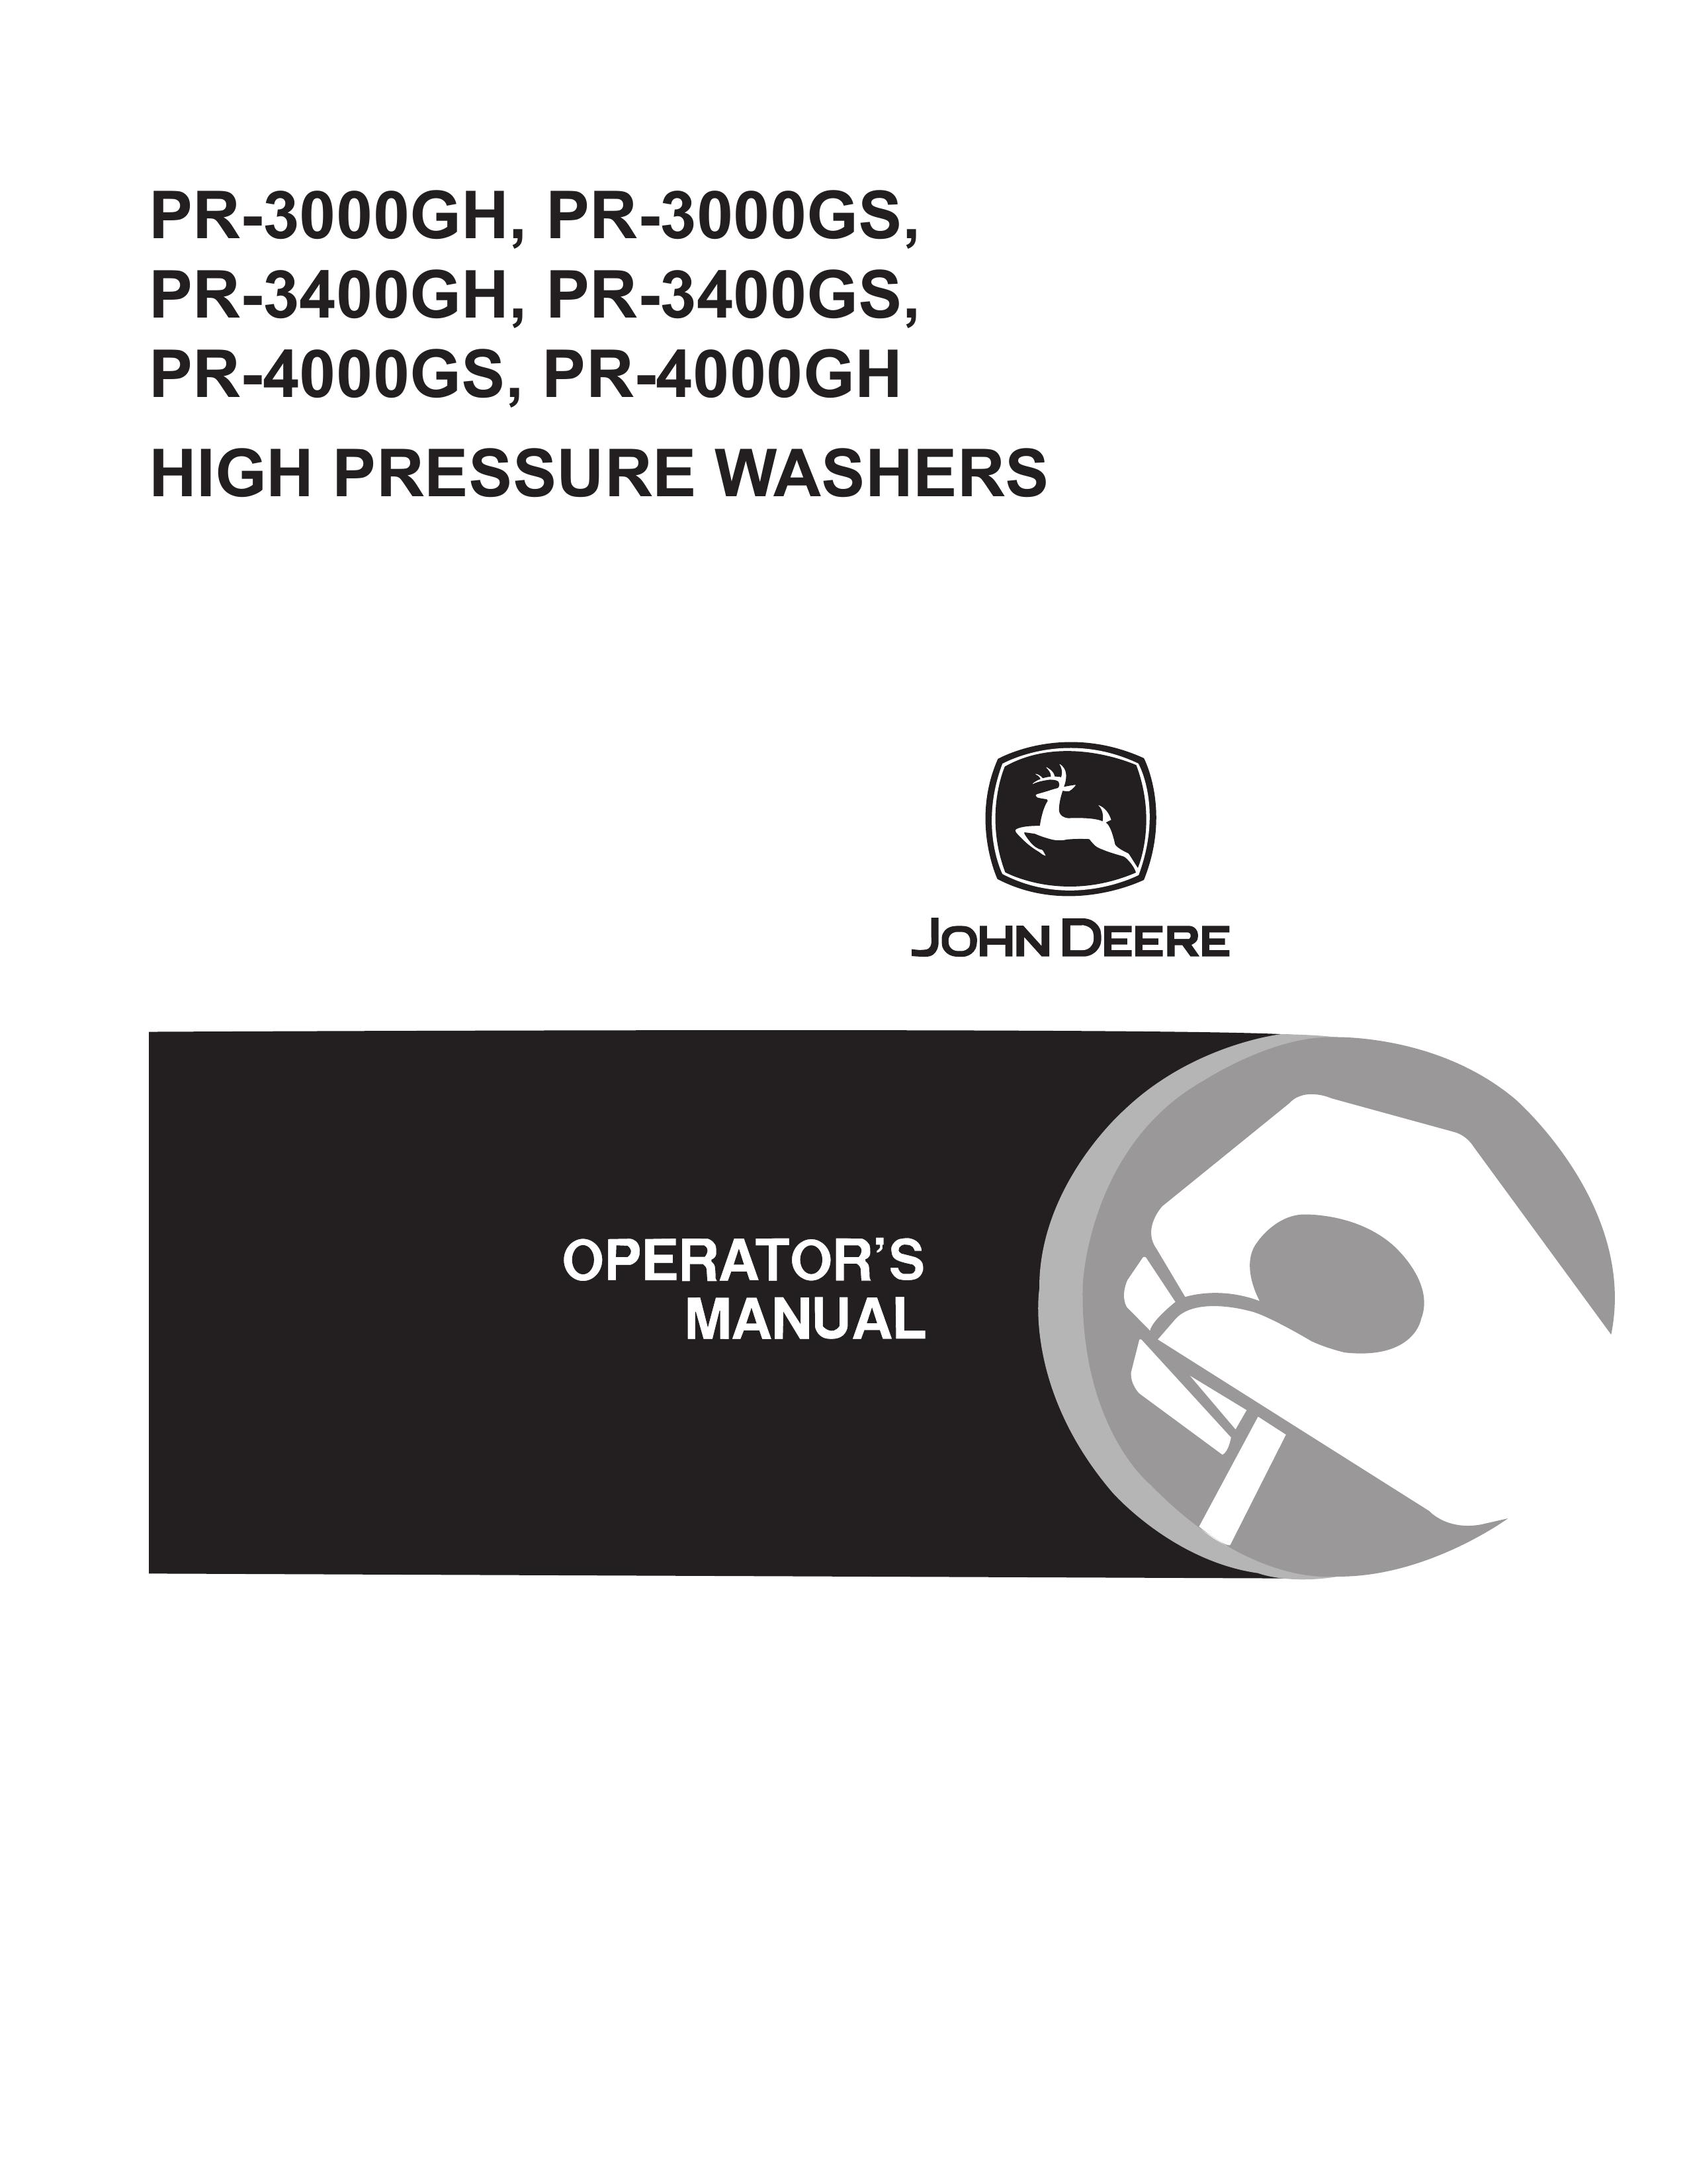 John Deere PR-4000GH Pressure Washer User Manual